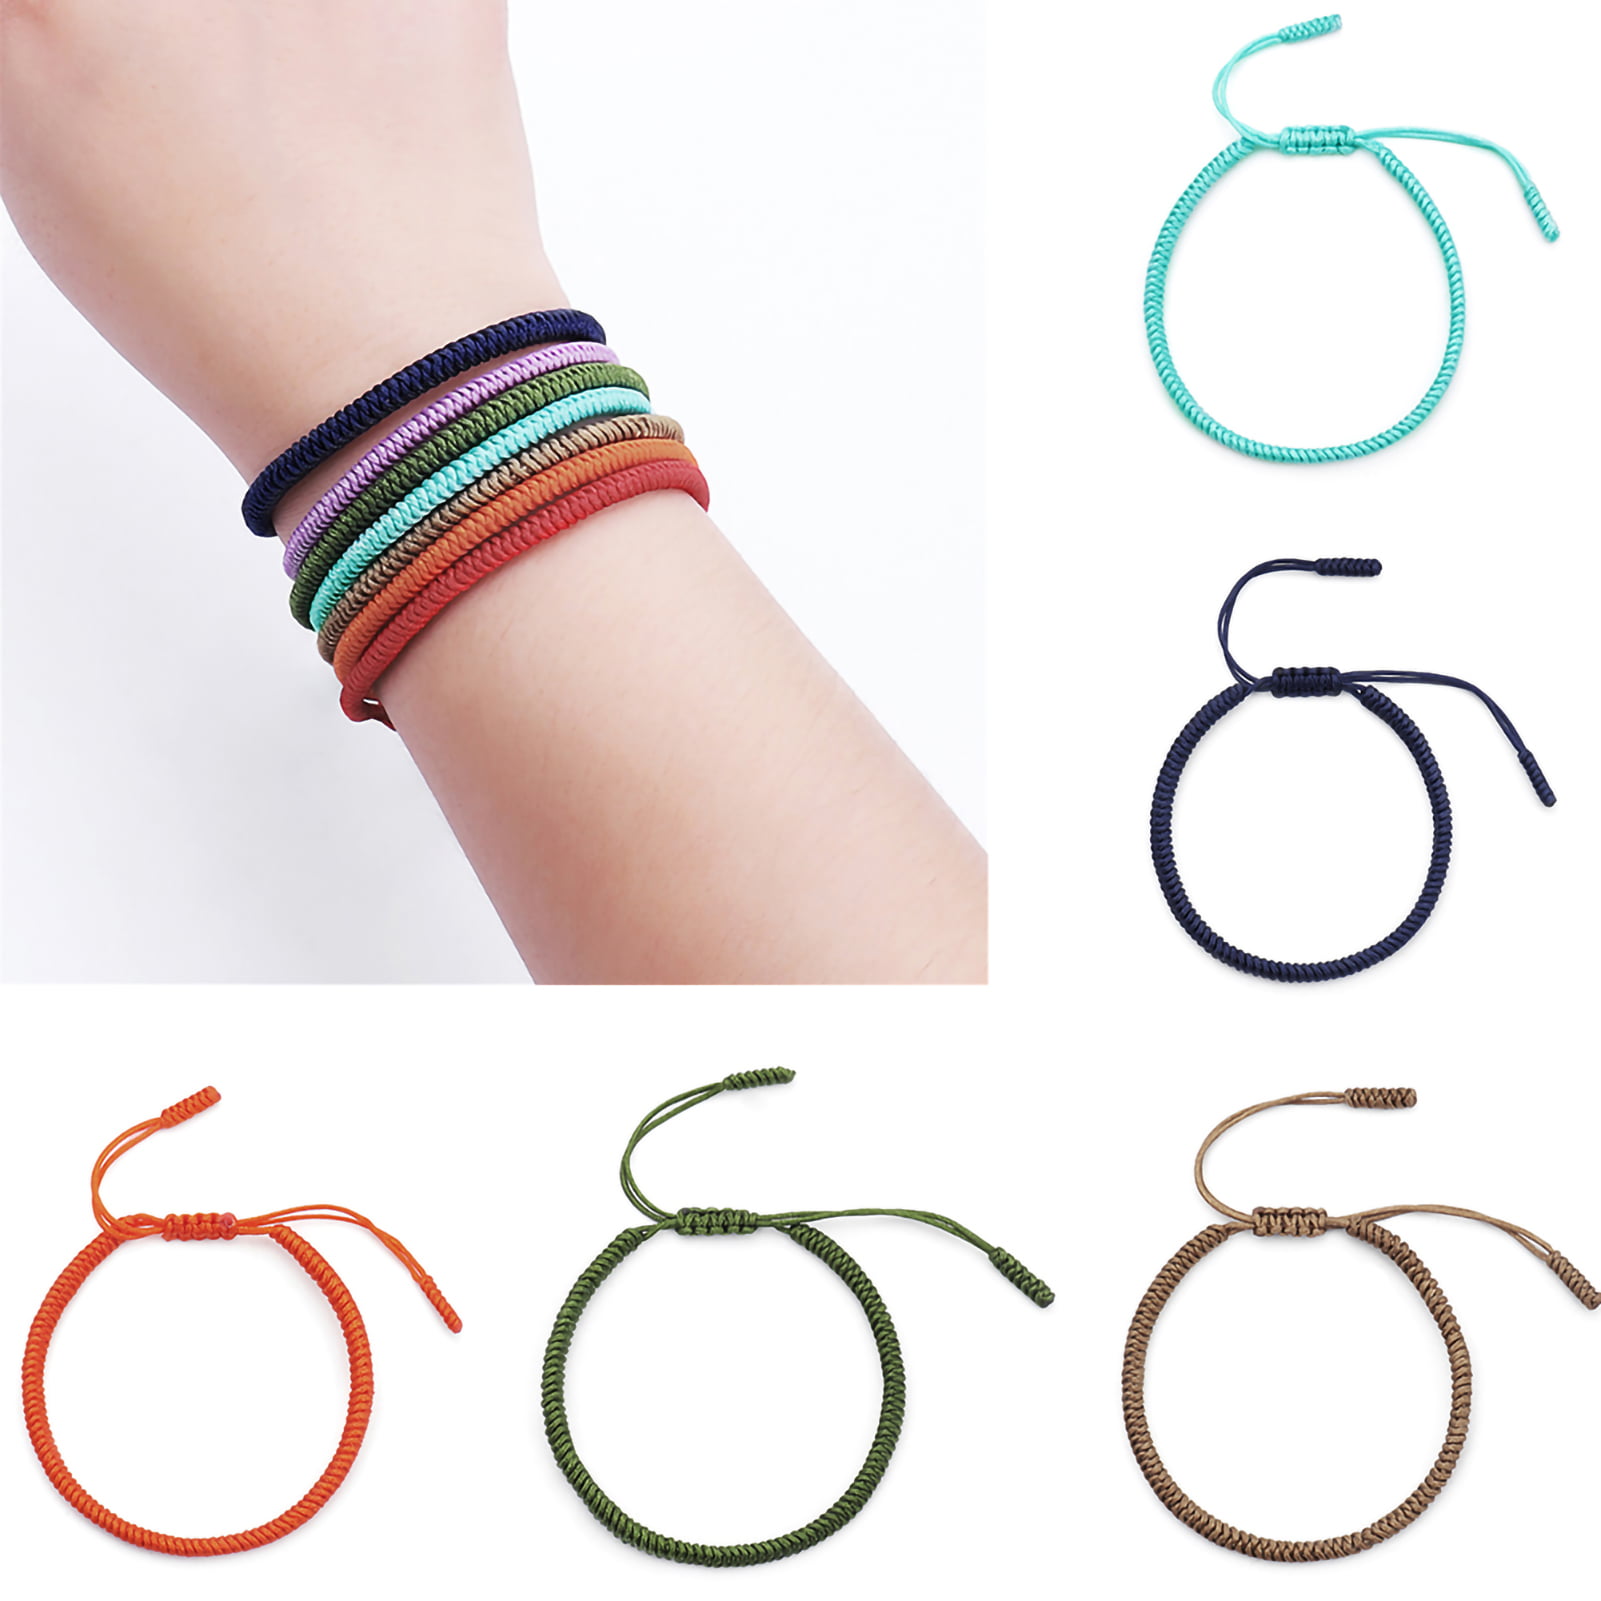 Share 171+ solid color friendship bracelet super hot